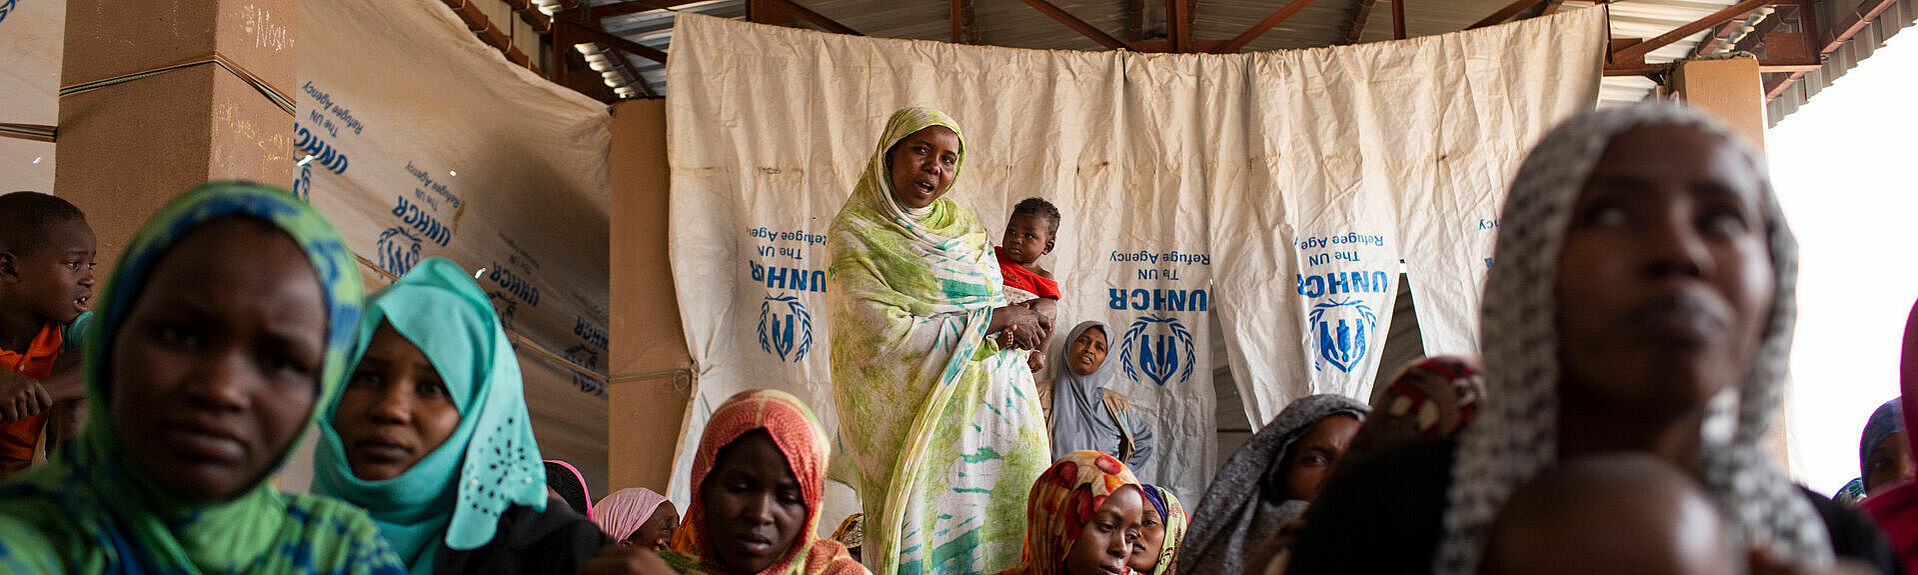 Flüchtlingsfrauen im Niger